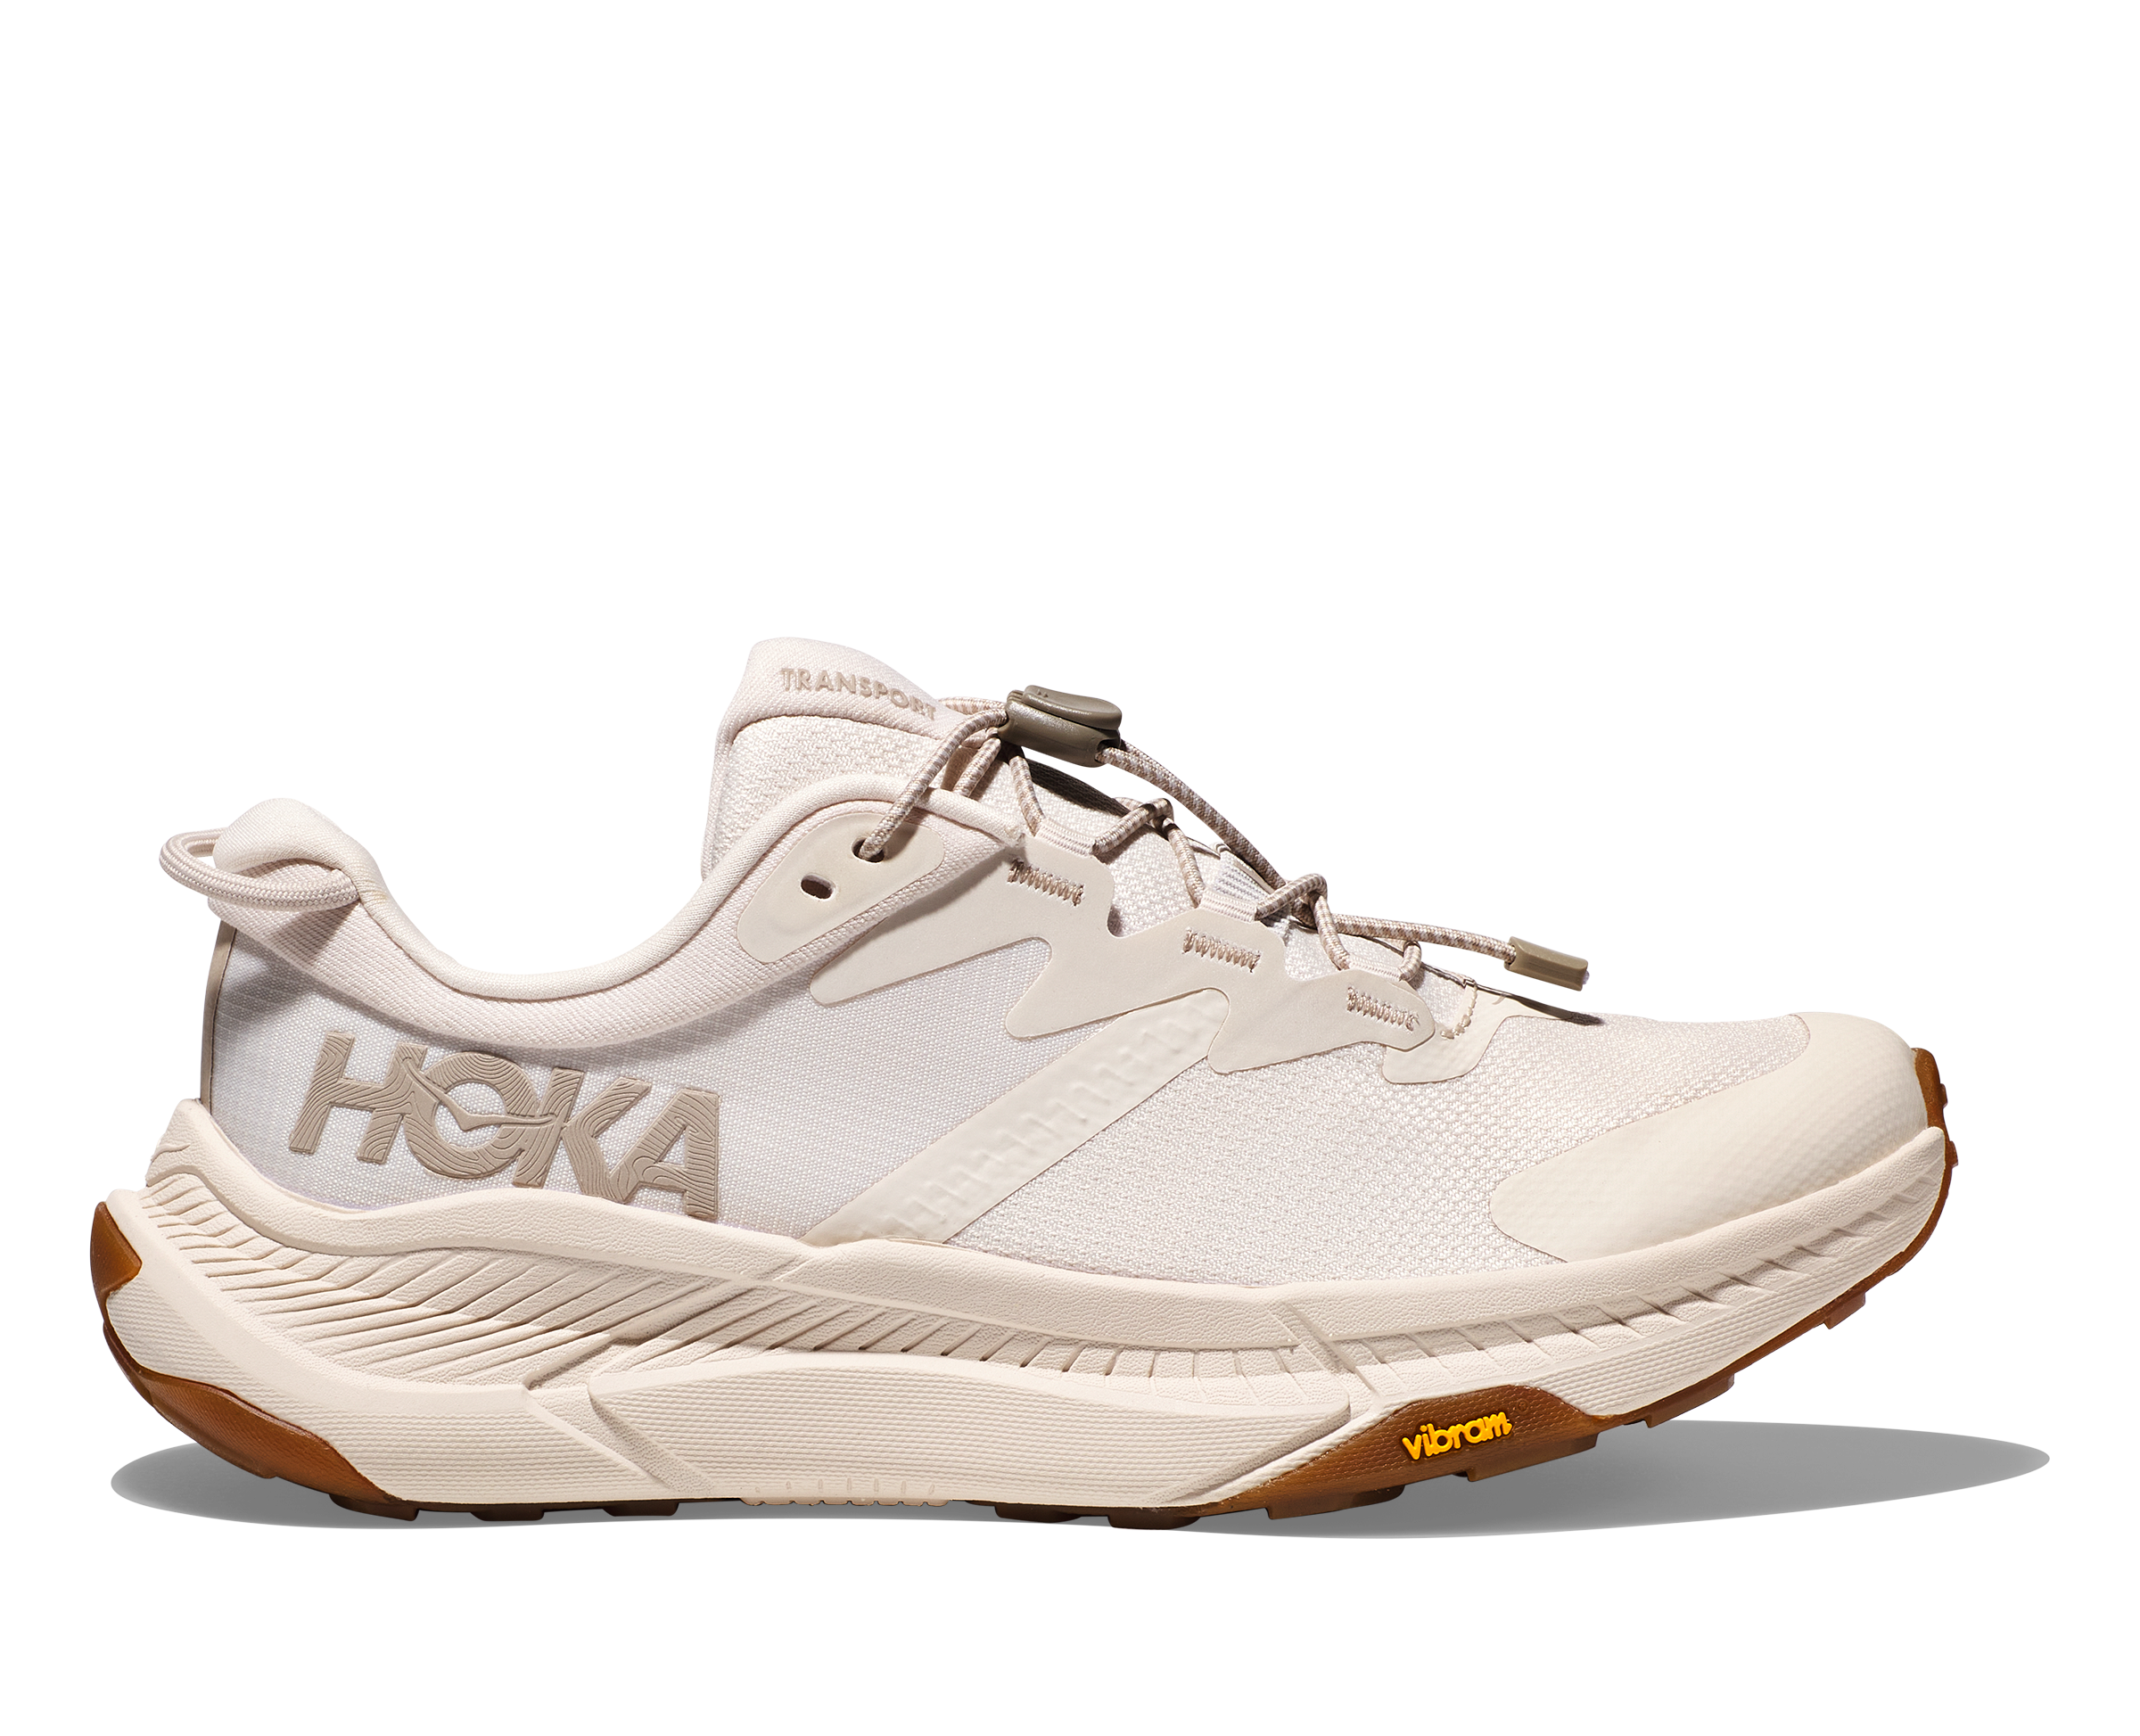 HOKA Transport "White" sneakers